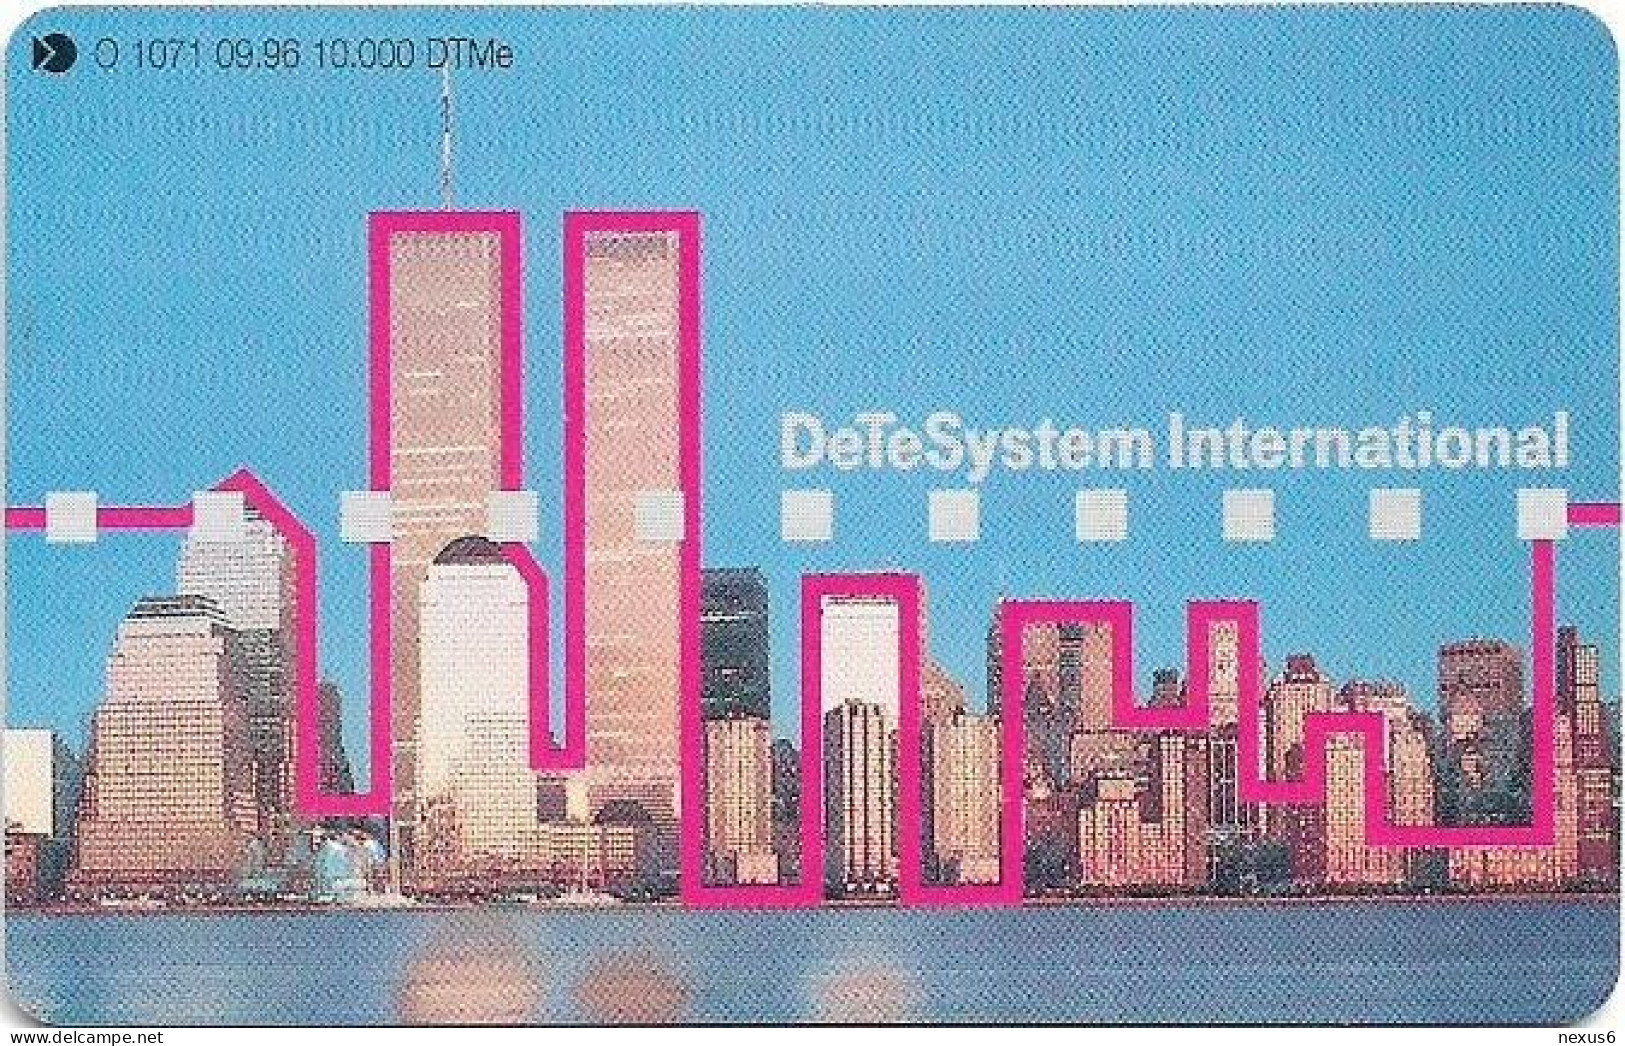 Germany - DeTeSystem International - New York - O 1071 - 09.1996, 6DM, 10.000ex, Used - O-Series : Series Clientes Excluidos Servicio De Colección